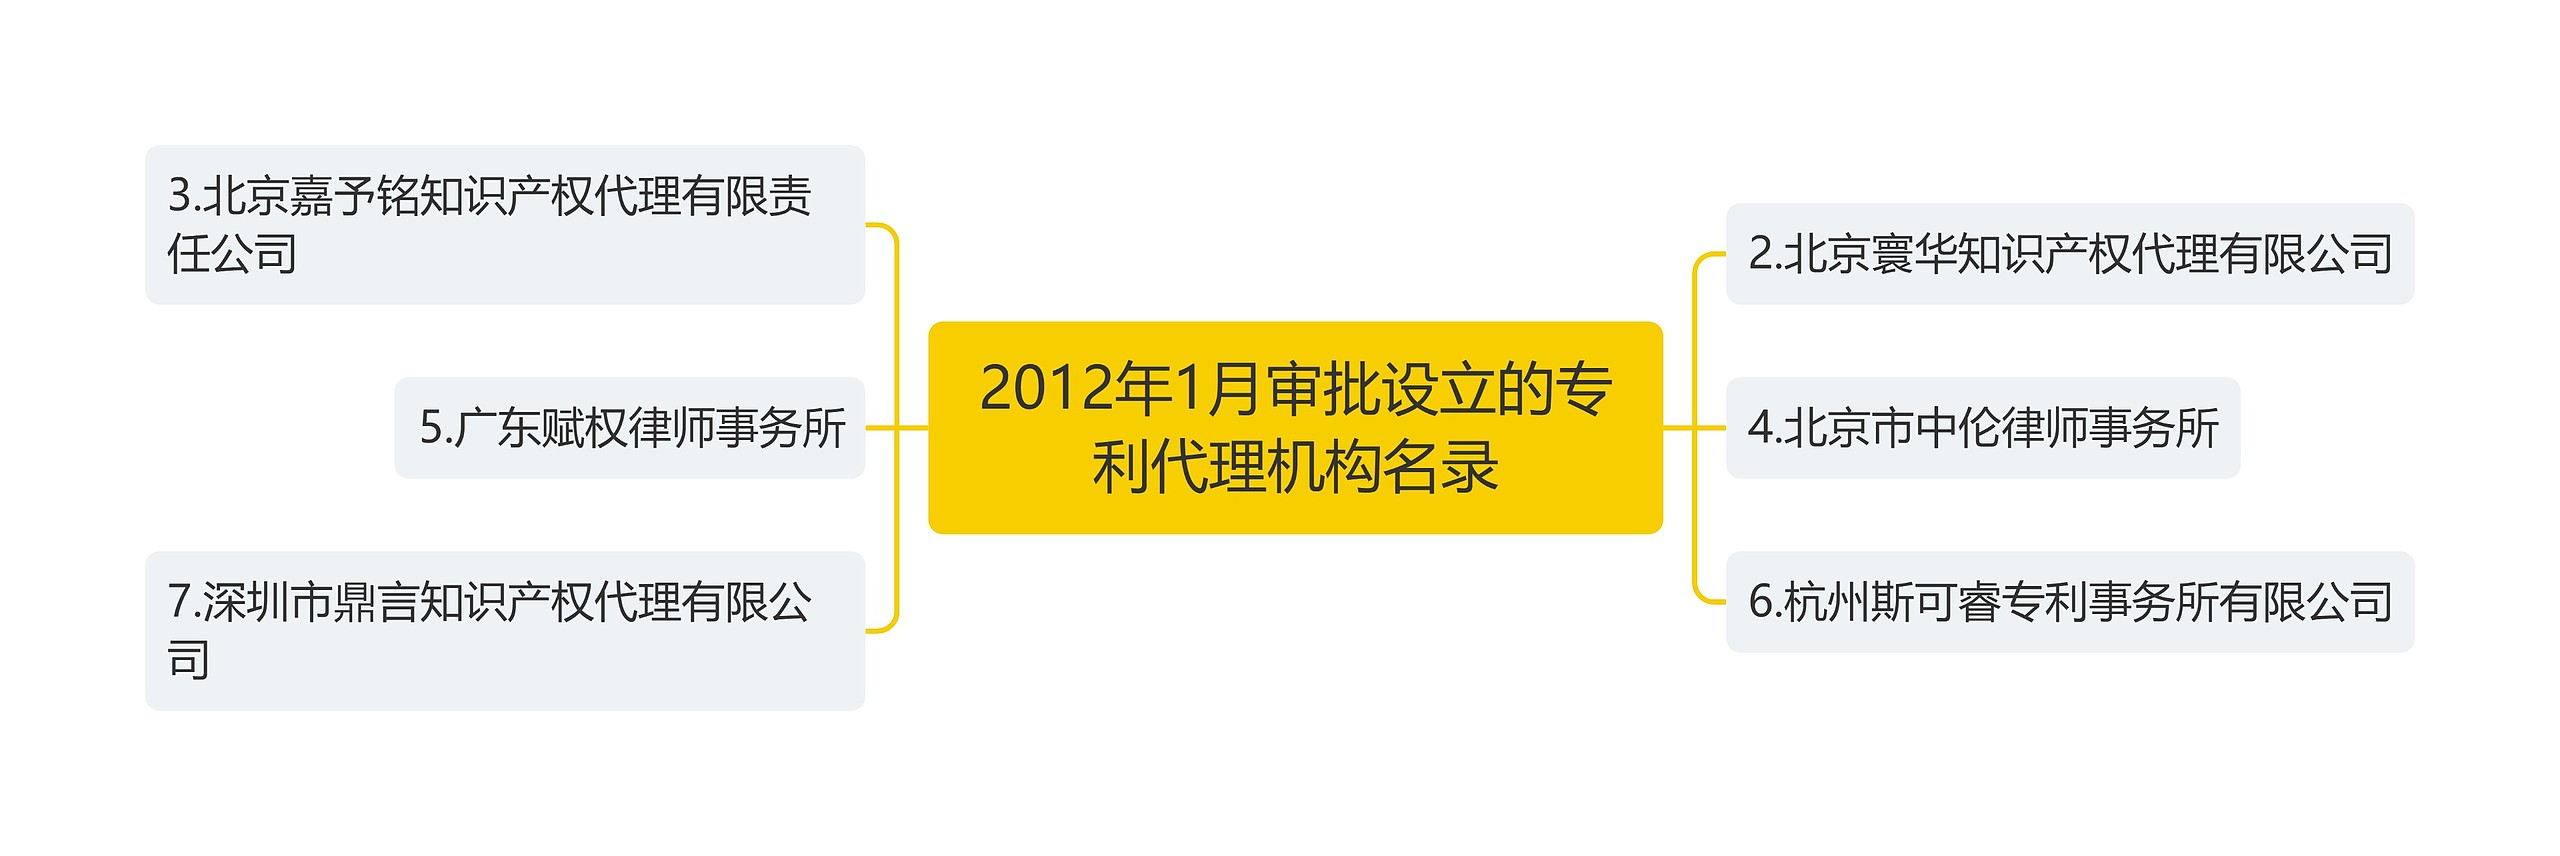 2012年1月审批设立的专利代理机构名录思维导图